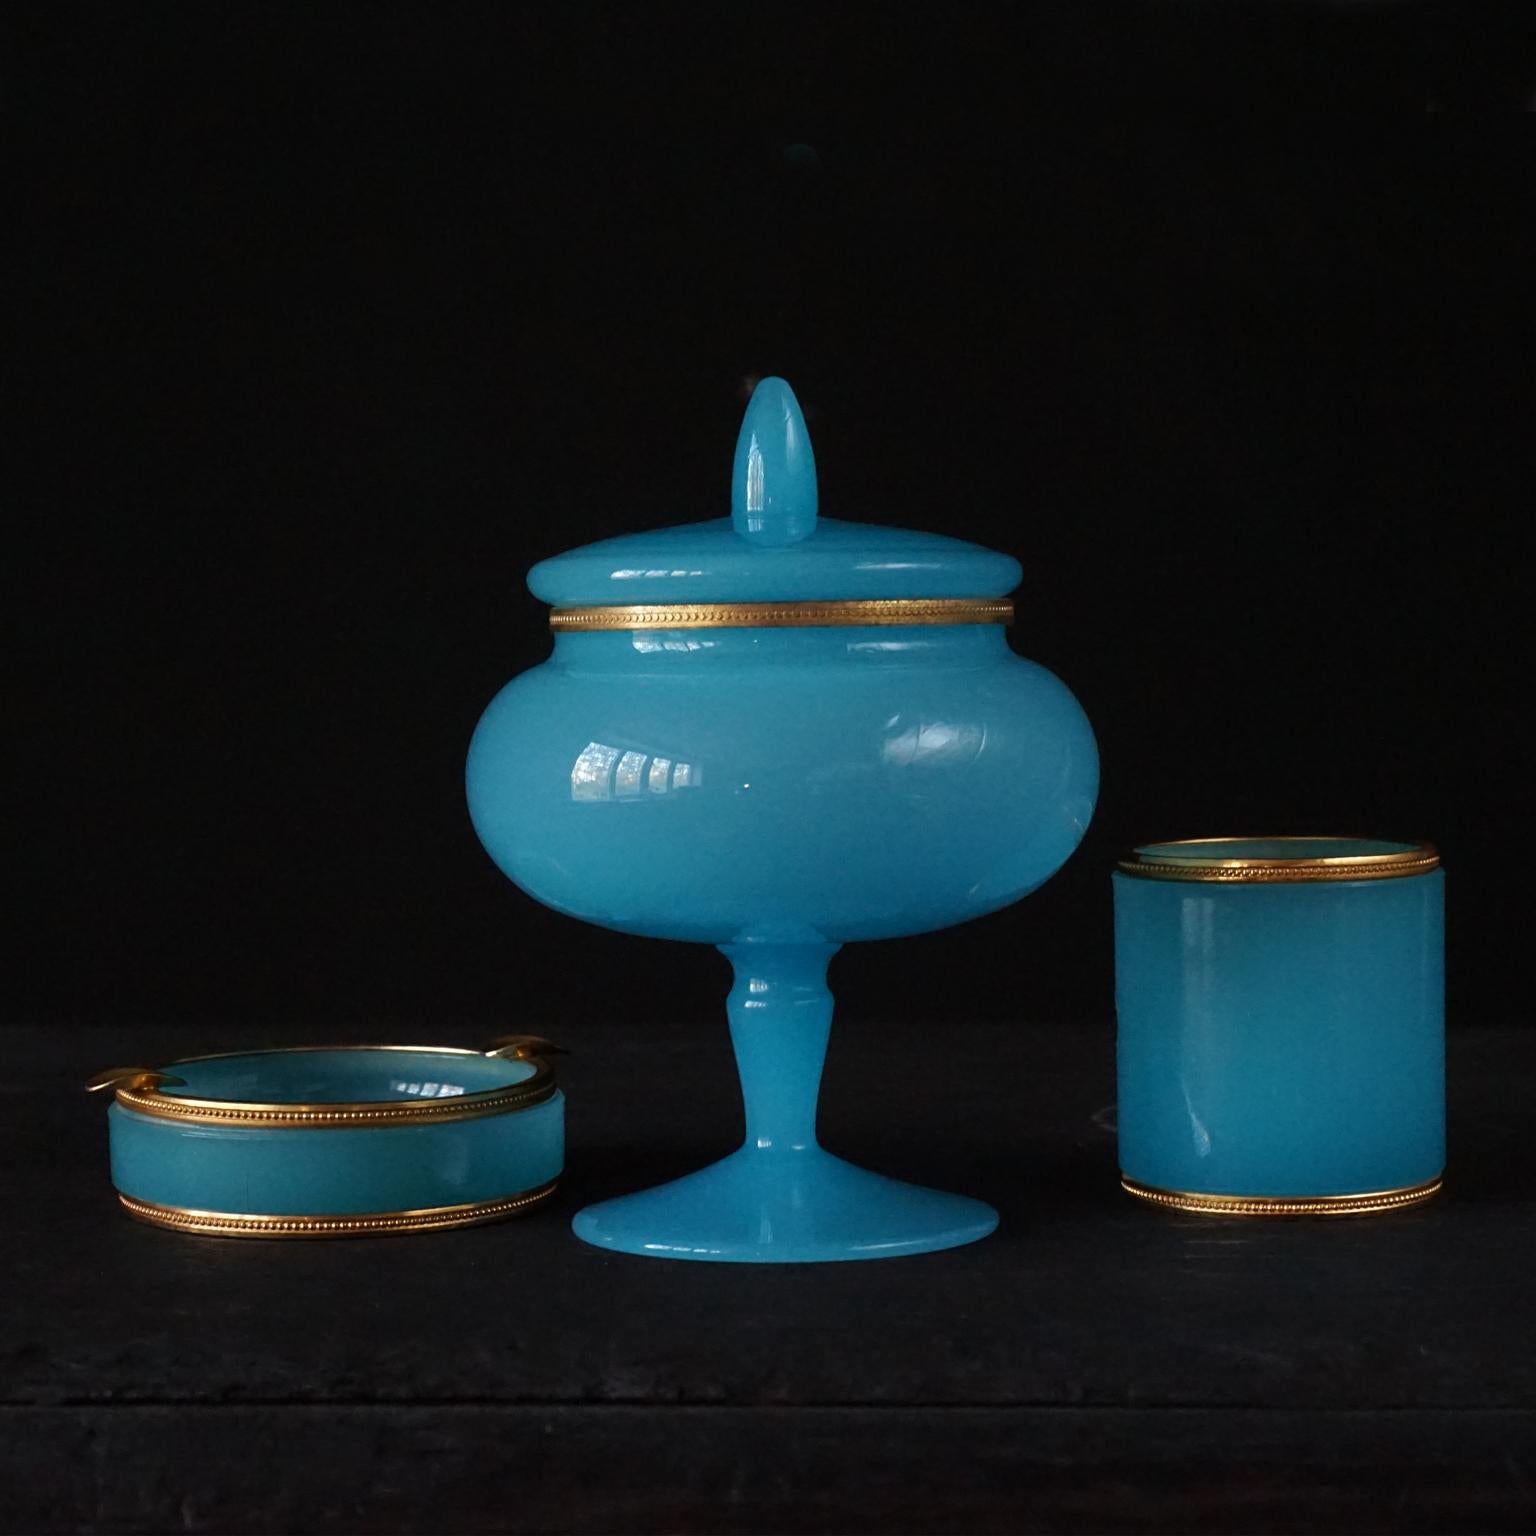 Set aus drei blauen Opalgläsern aus den 1950er Jahren. Hergestellt in Italien 
Das leuchtend blaue Milch-, Opal- oder Überfangglas ist schwer und dick, alle Stücke haben eine dekorative Messingfassung oder einen Rand aus Ormolu

Das Set besteht